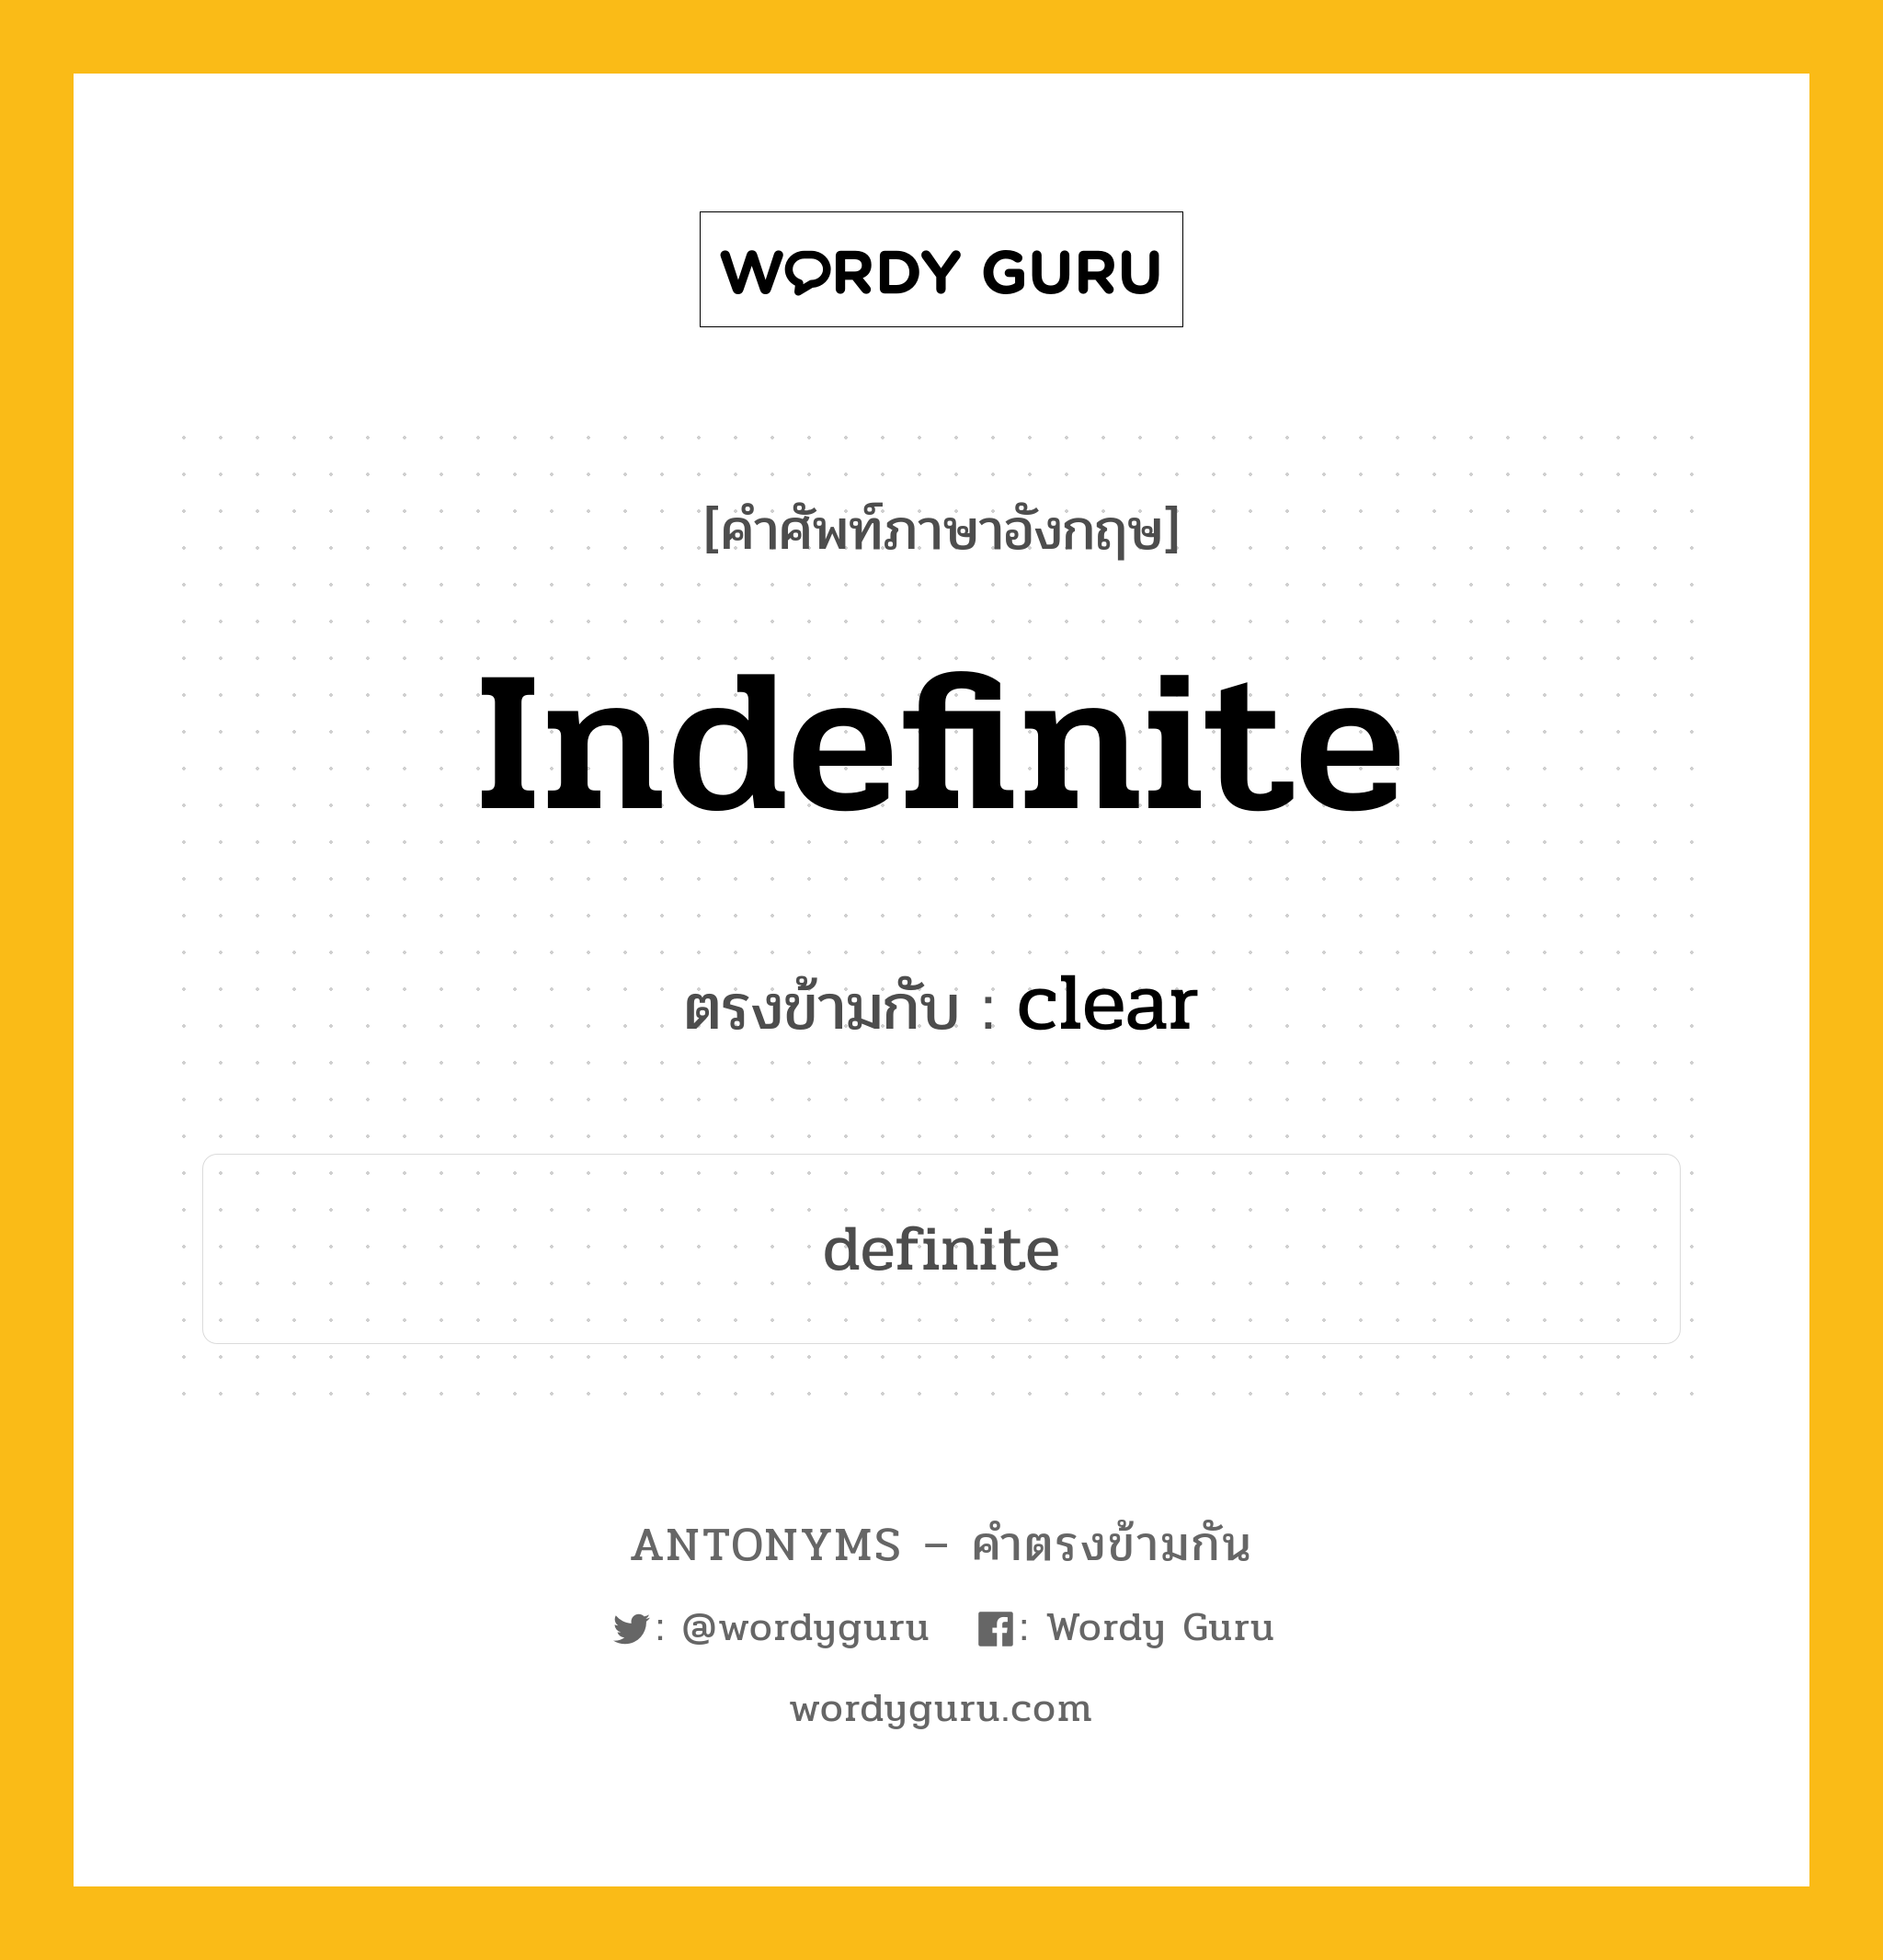 indefinite เป็นคำตรงข้ามกับคำไหนบ้าง?, คำศัพท์ภาษาอังกฤษ indefinite ตรงข้ามกับ clear หมวด clear